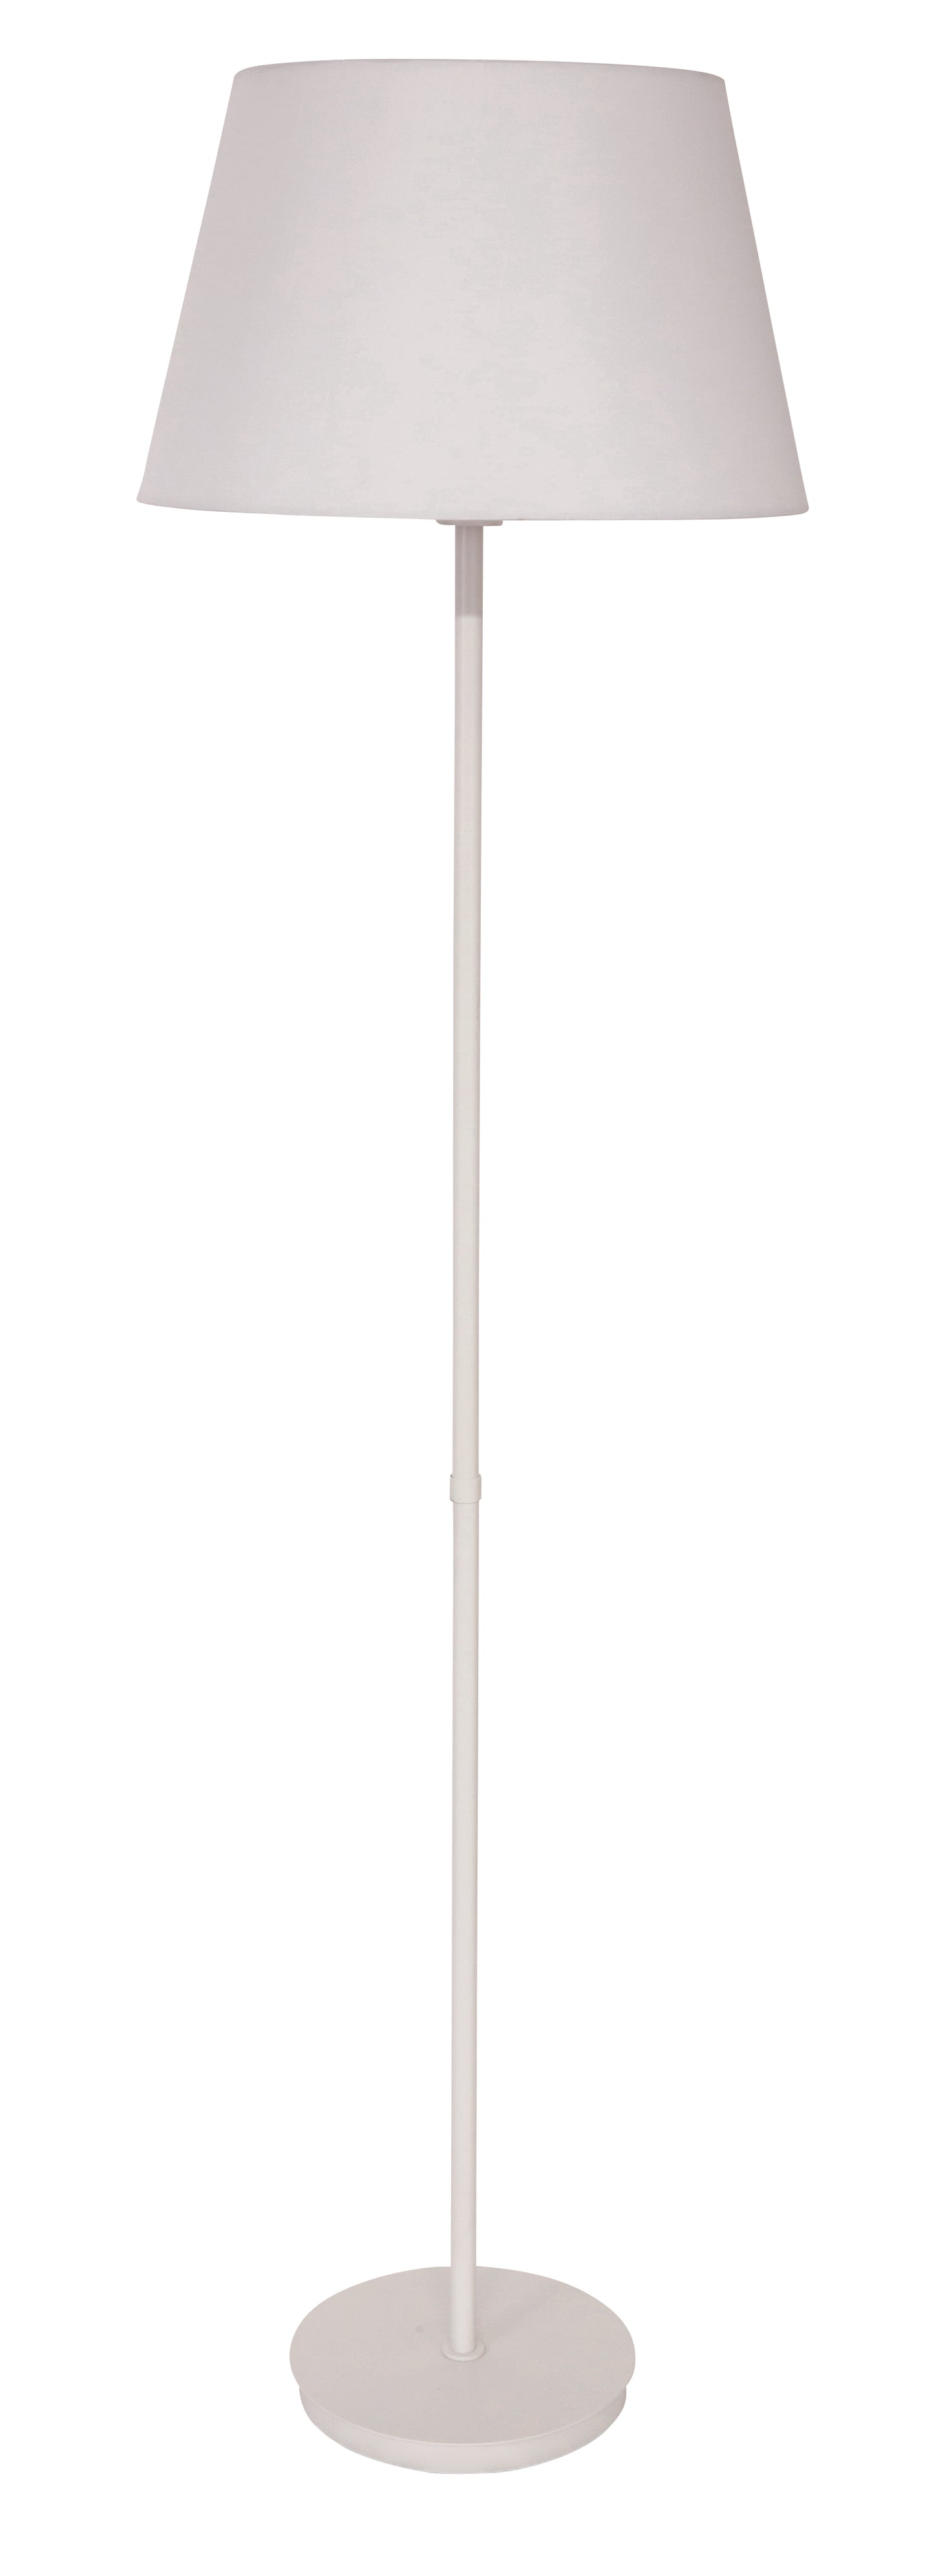 House of Troy Vernon 3-bulb Floor Lamp in White VER500-WT